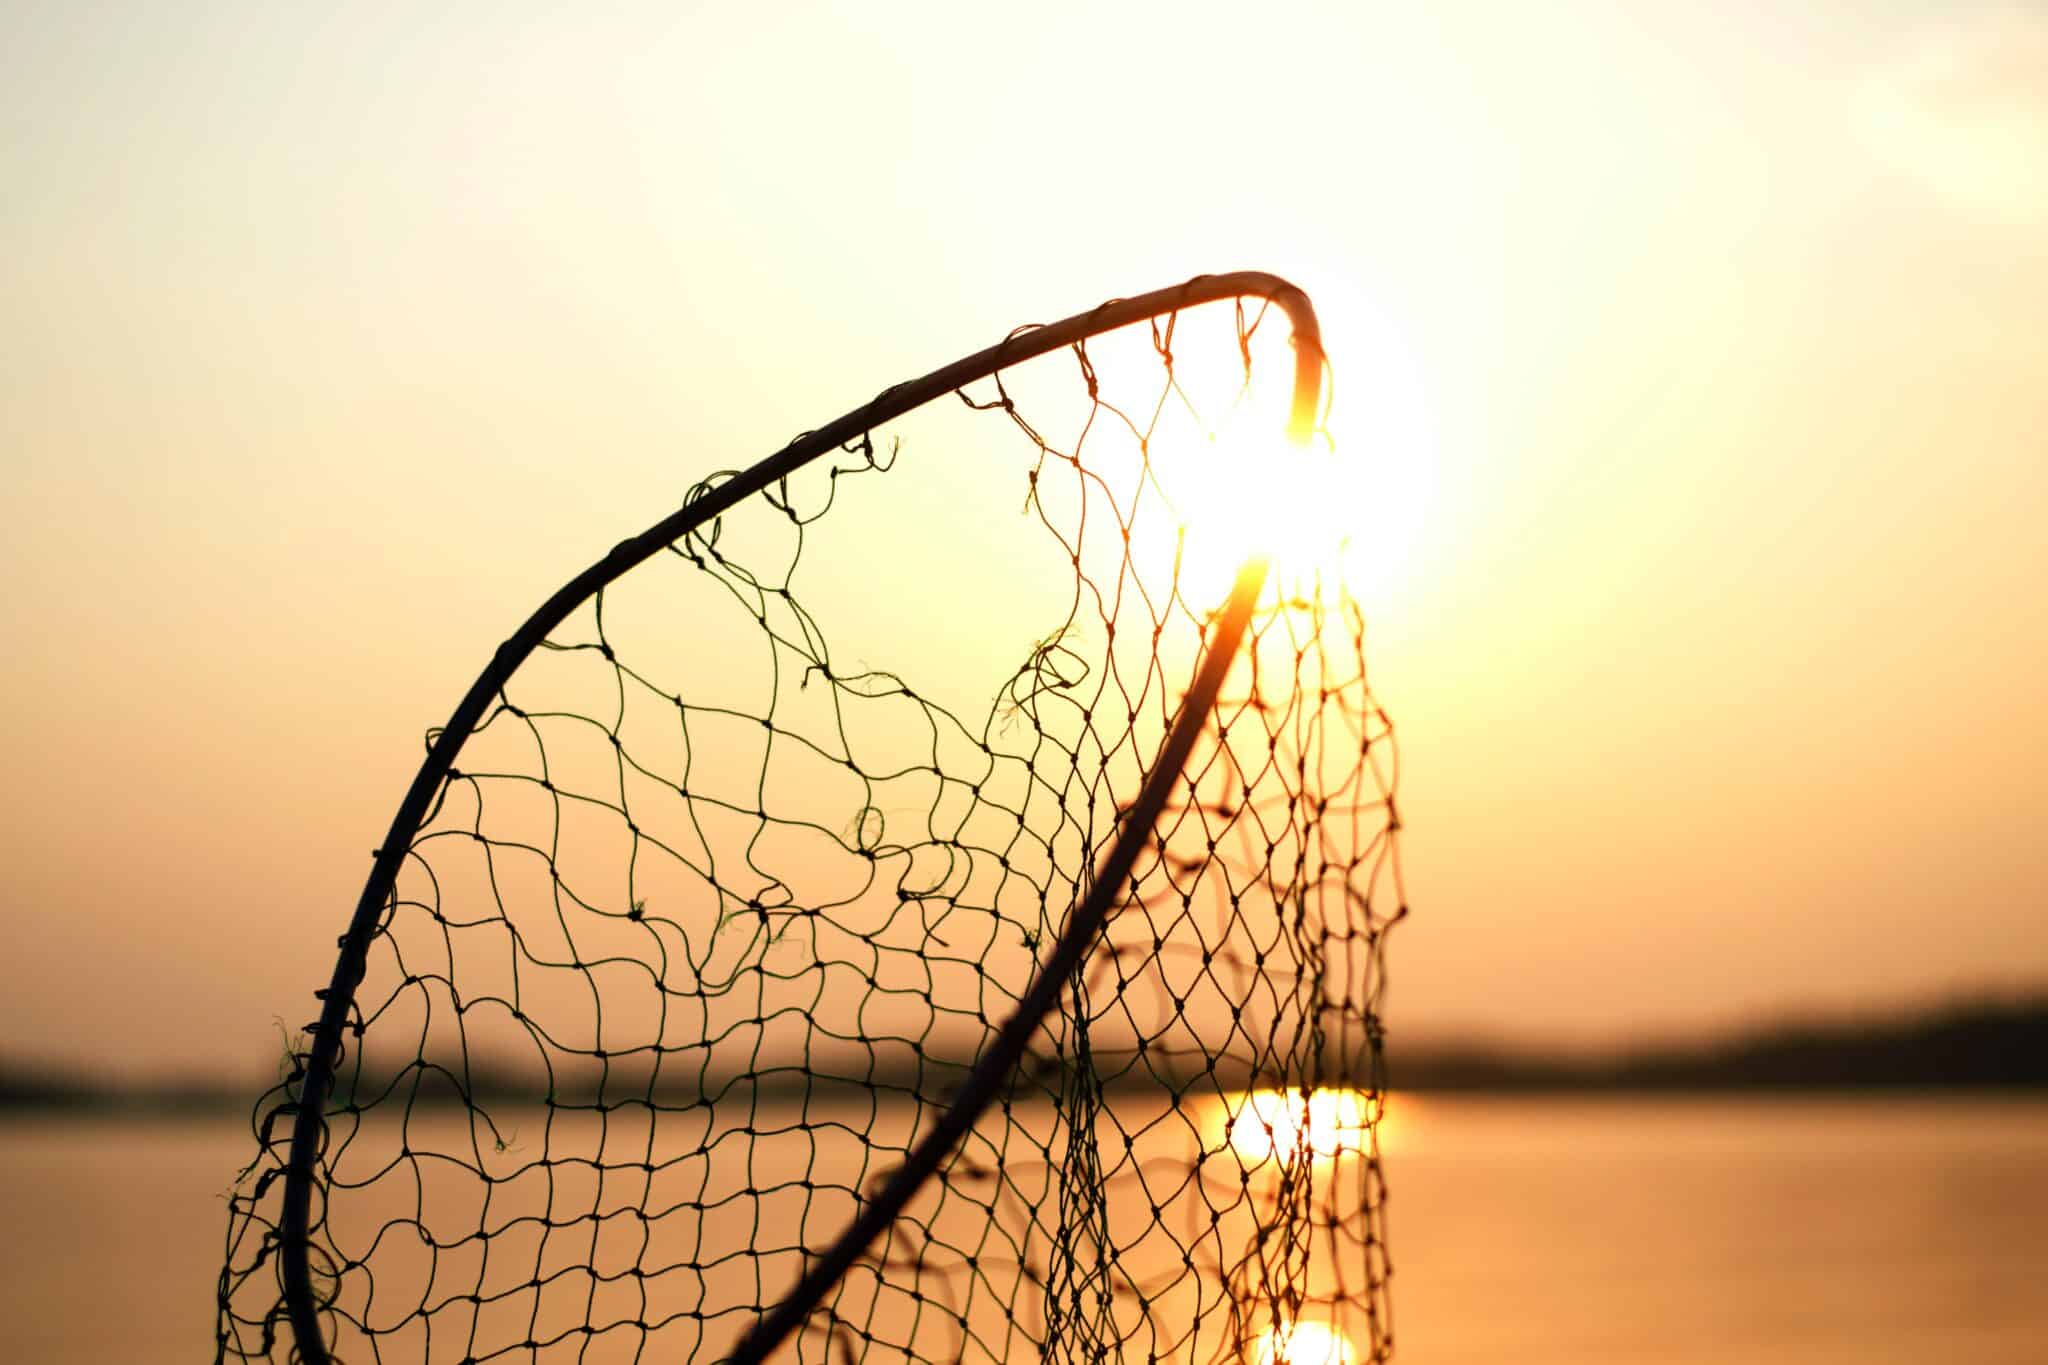 fishing net held up against sunset